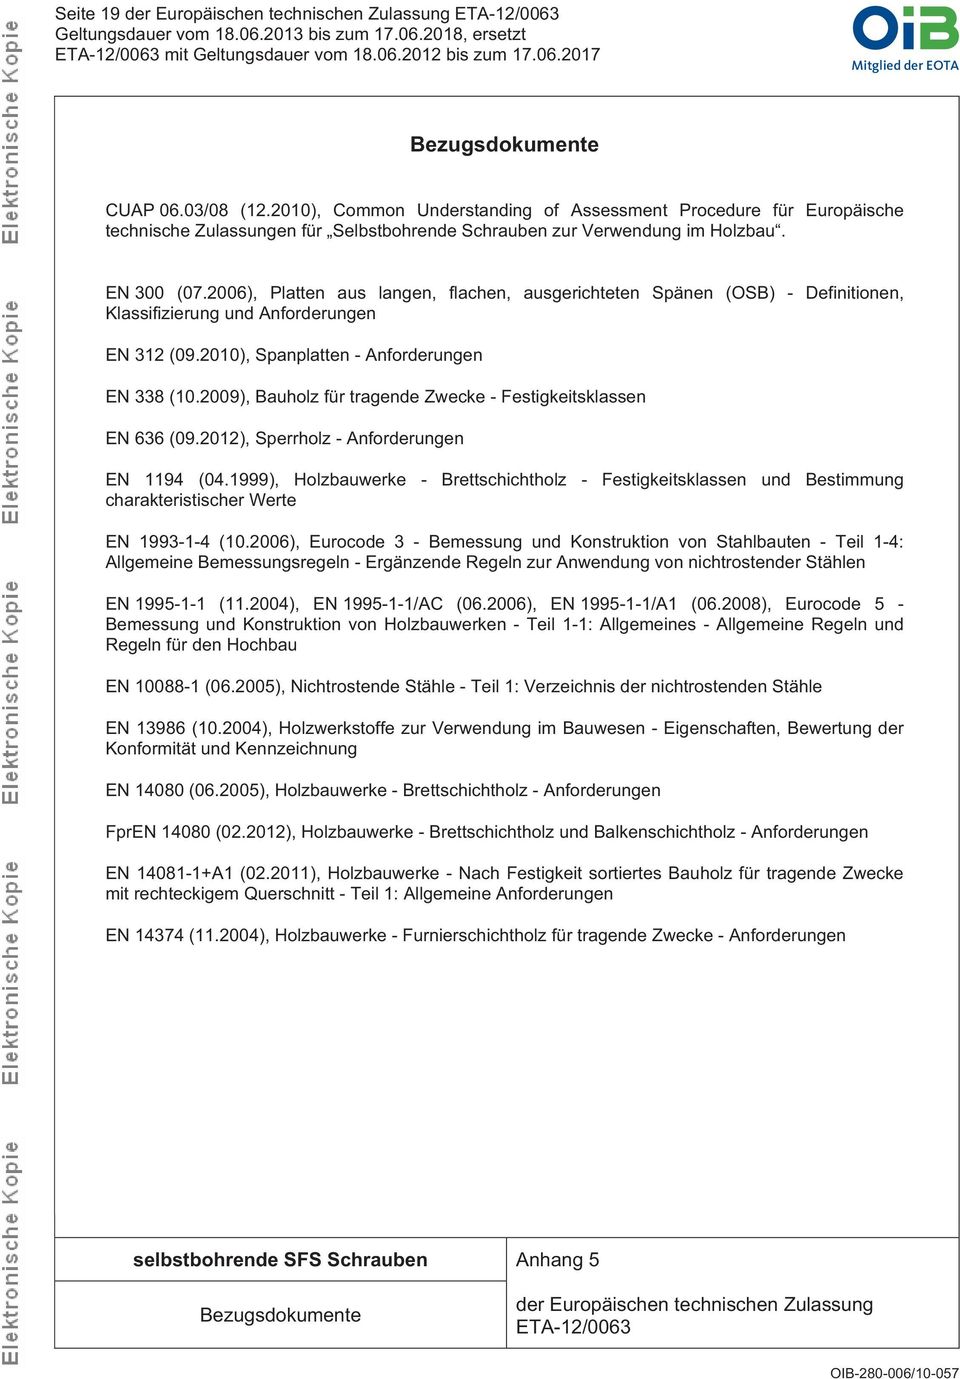 2009), Bauholz für tragende Zwecke - Festigkeitsklassen EN 636 (09.2012), Sperrholz - Anforderungen EN 1194 (04.